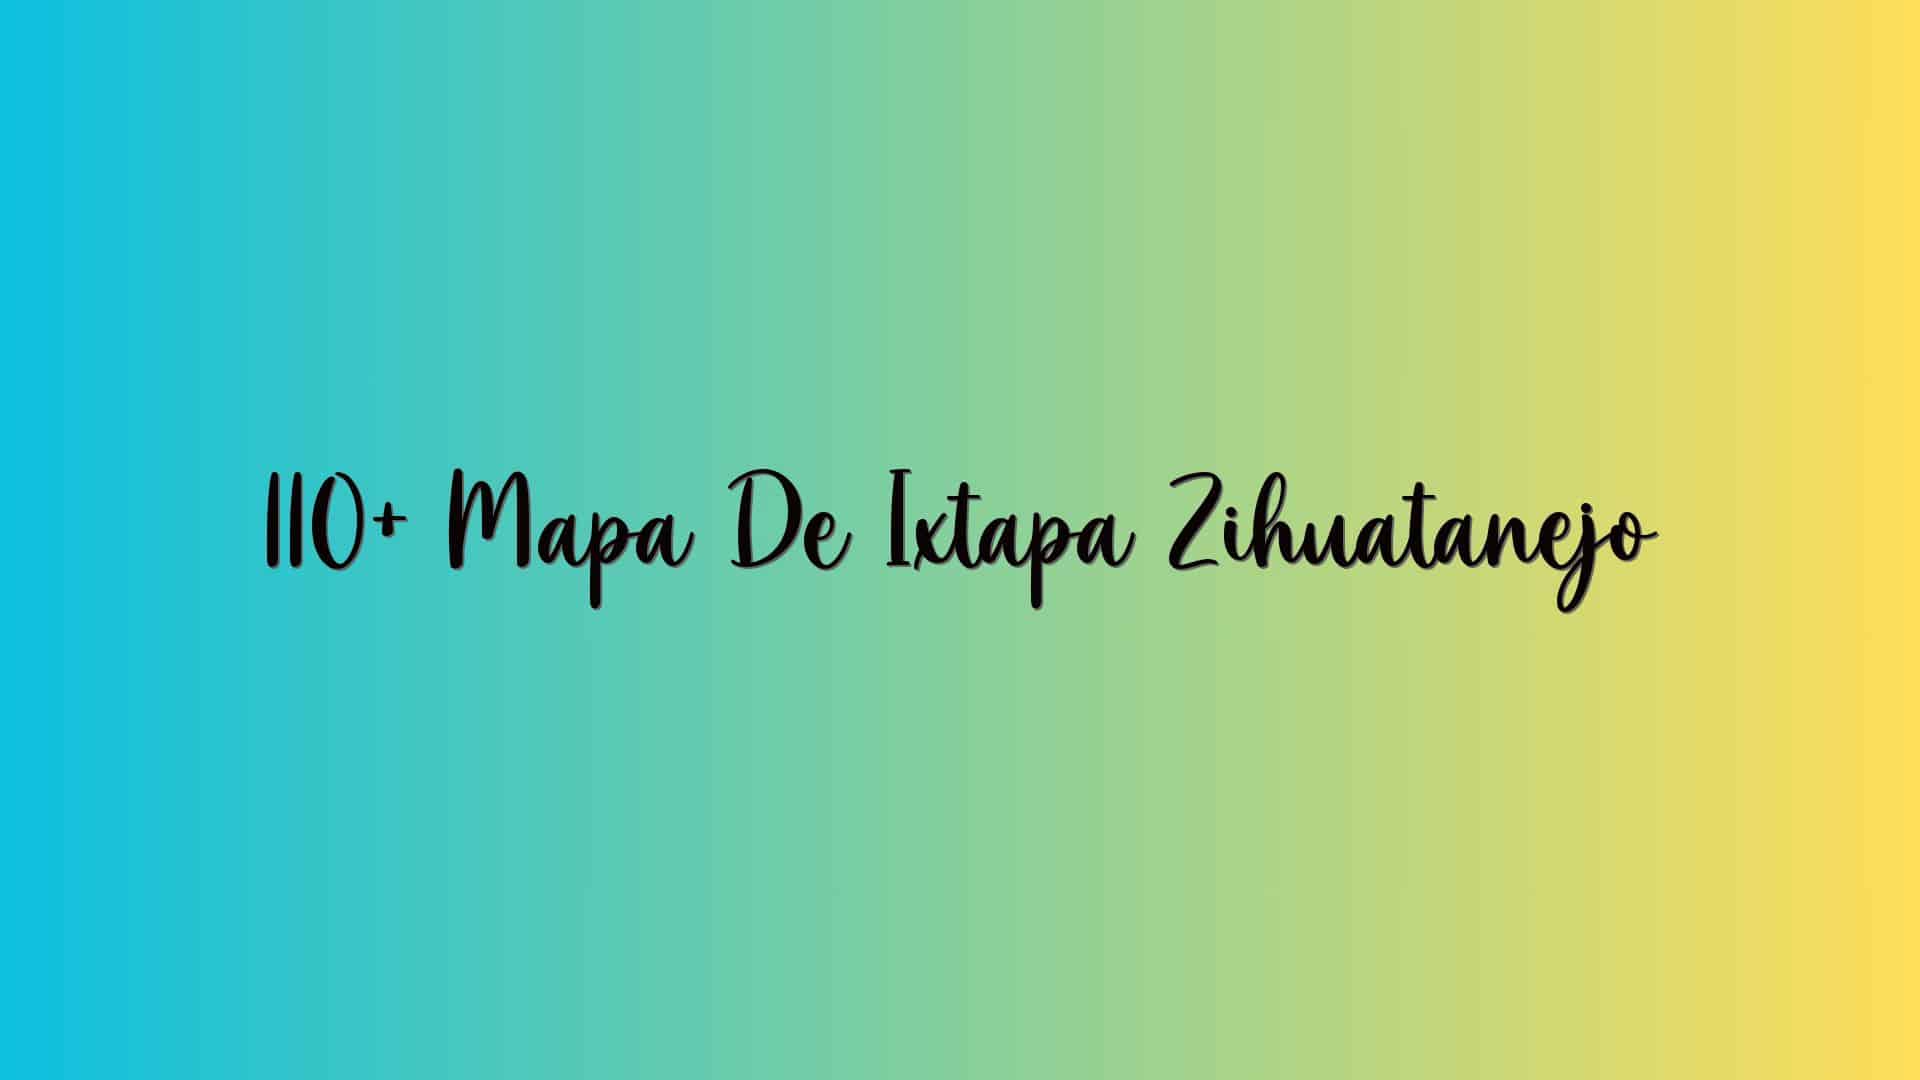 110+ Mapa De Ixtapa Zihuatanejo